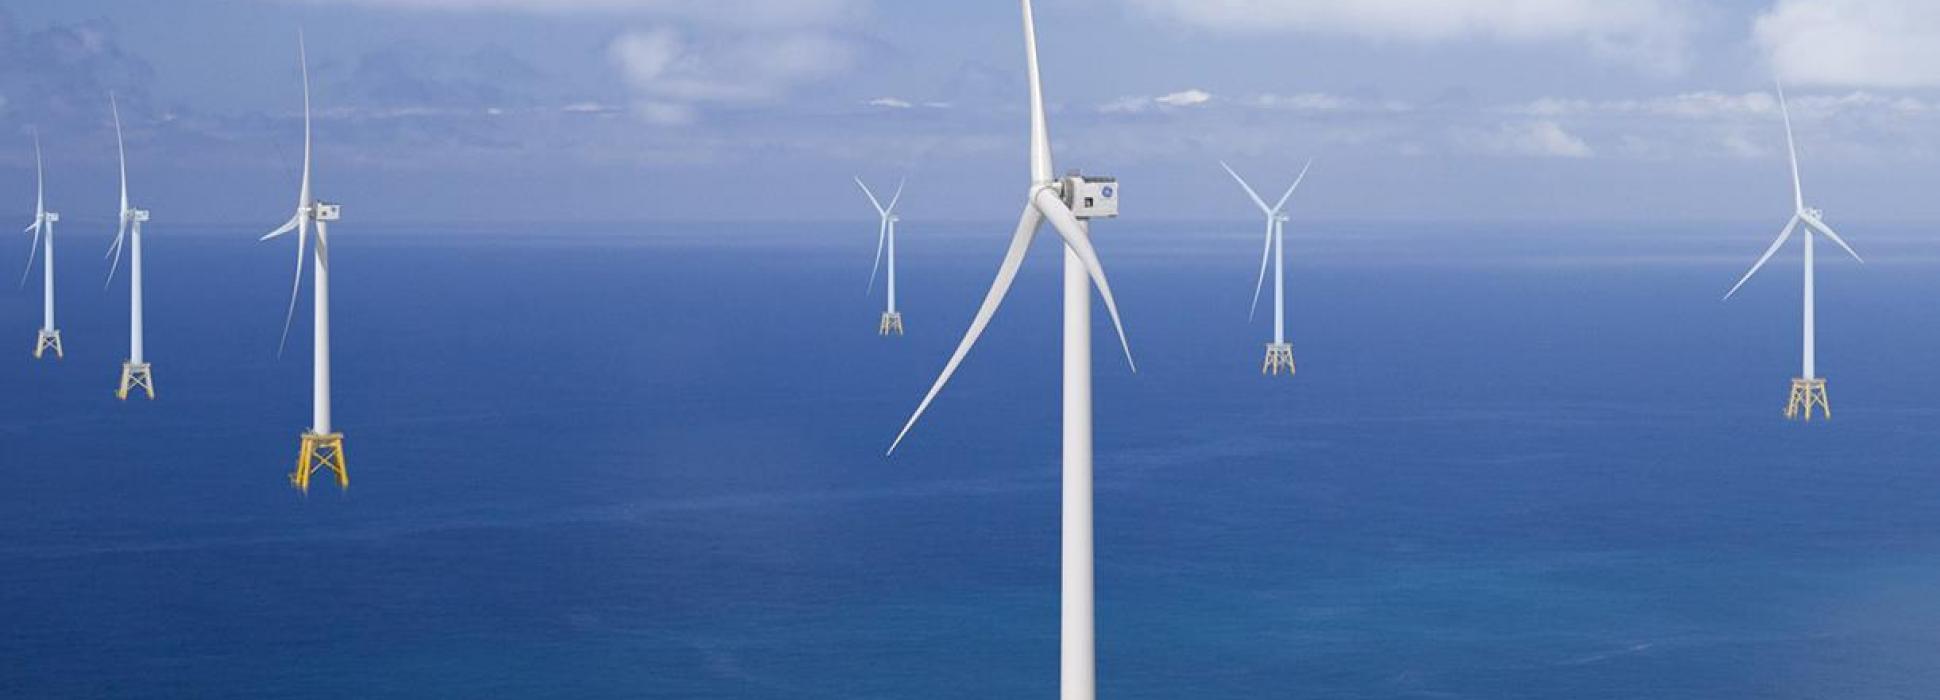 En inaugurant l'usine LM Wind Power  le 6 novembre 2019, Cherbourg-en-Cotentin s'impose comme la place centrale de la filière de l’éolien en mer